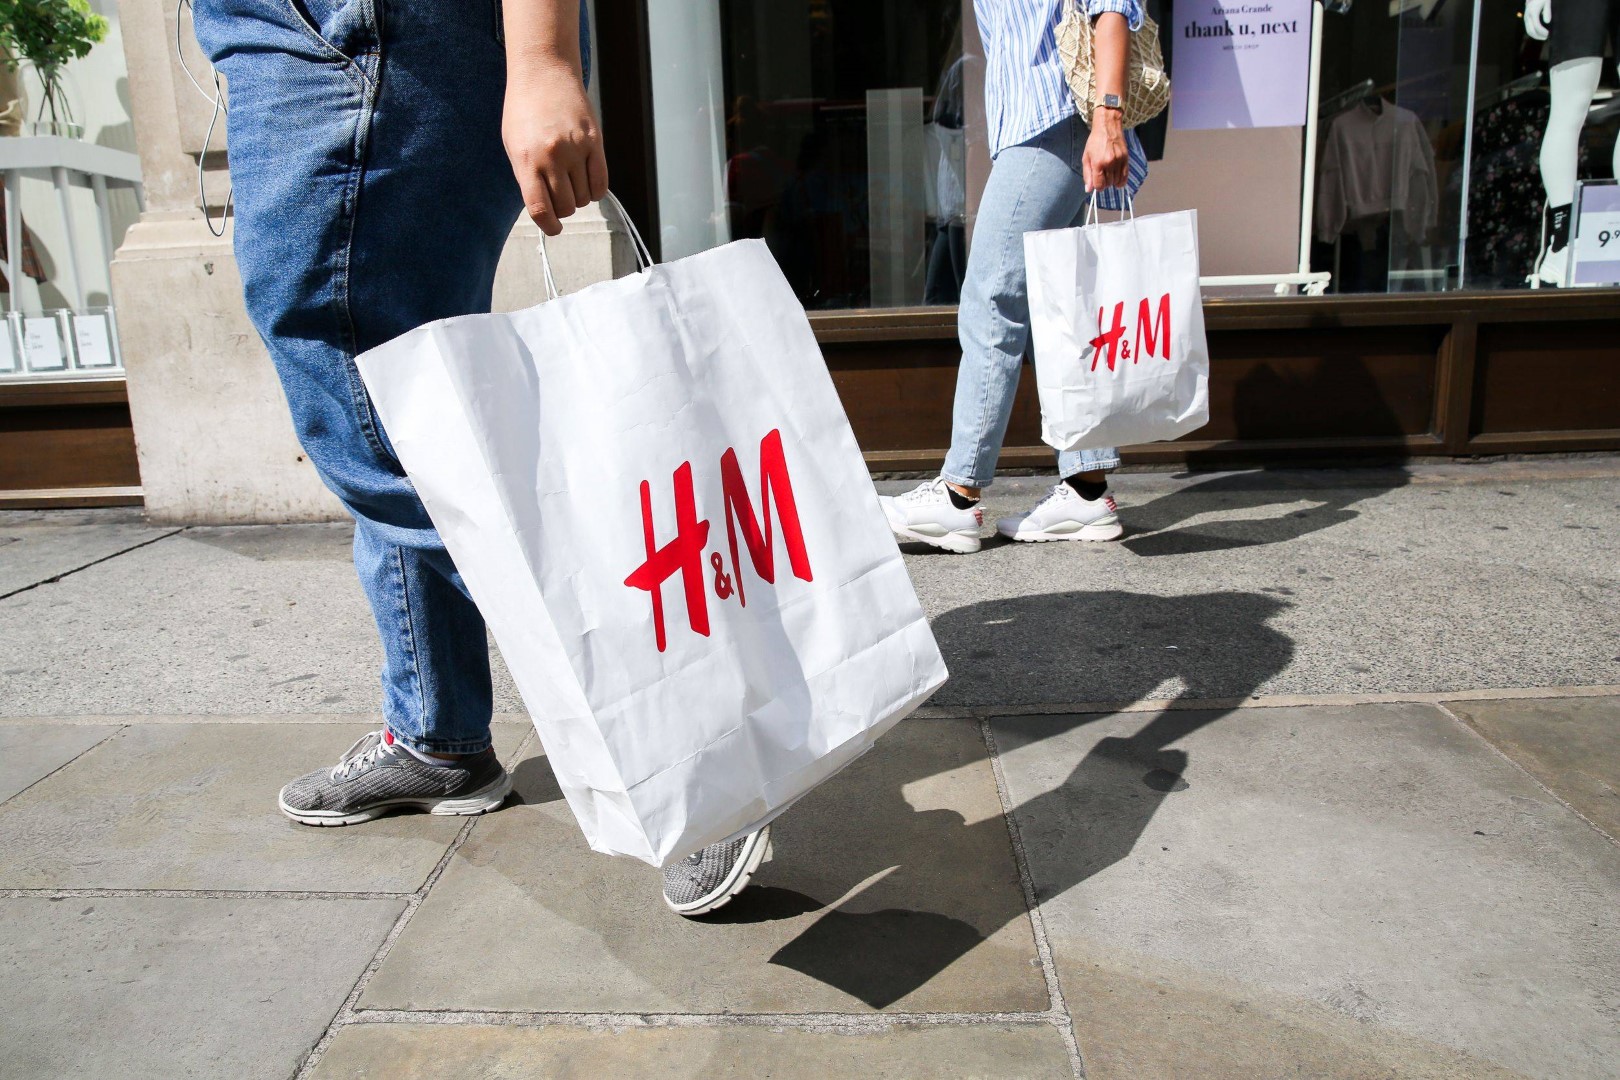 Švedijos drabužių mažmeninės prekybos įmonė H&M pirmadienį pranešė nusprendusi nutraukti veiklą Rusijoje, prieš tai kovo mėnesį po Maskvos įsiveržimo į Ukrainą sustabdžiusi ten visus pardavimus.